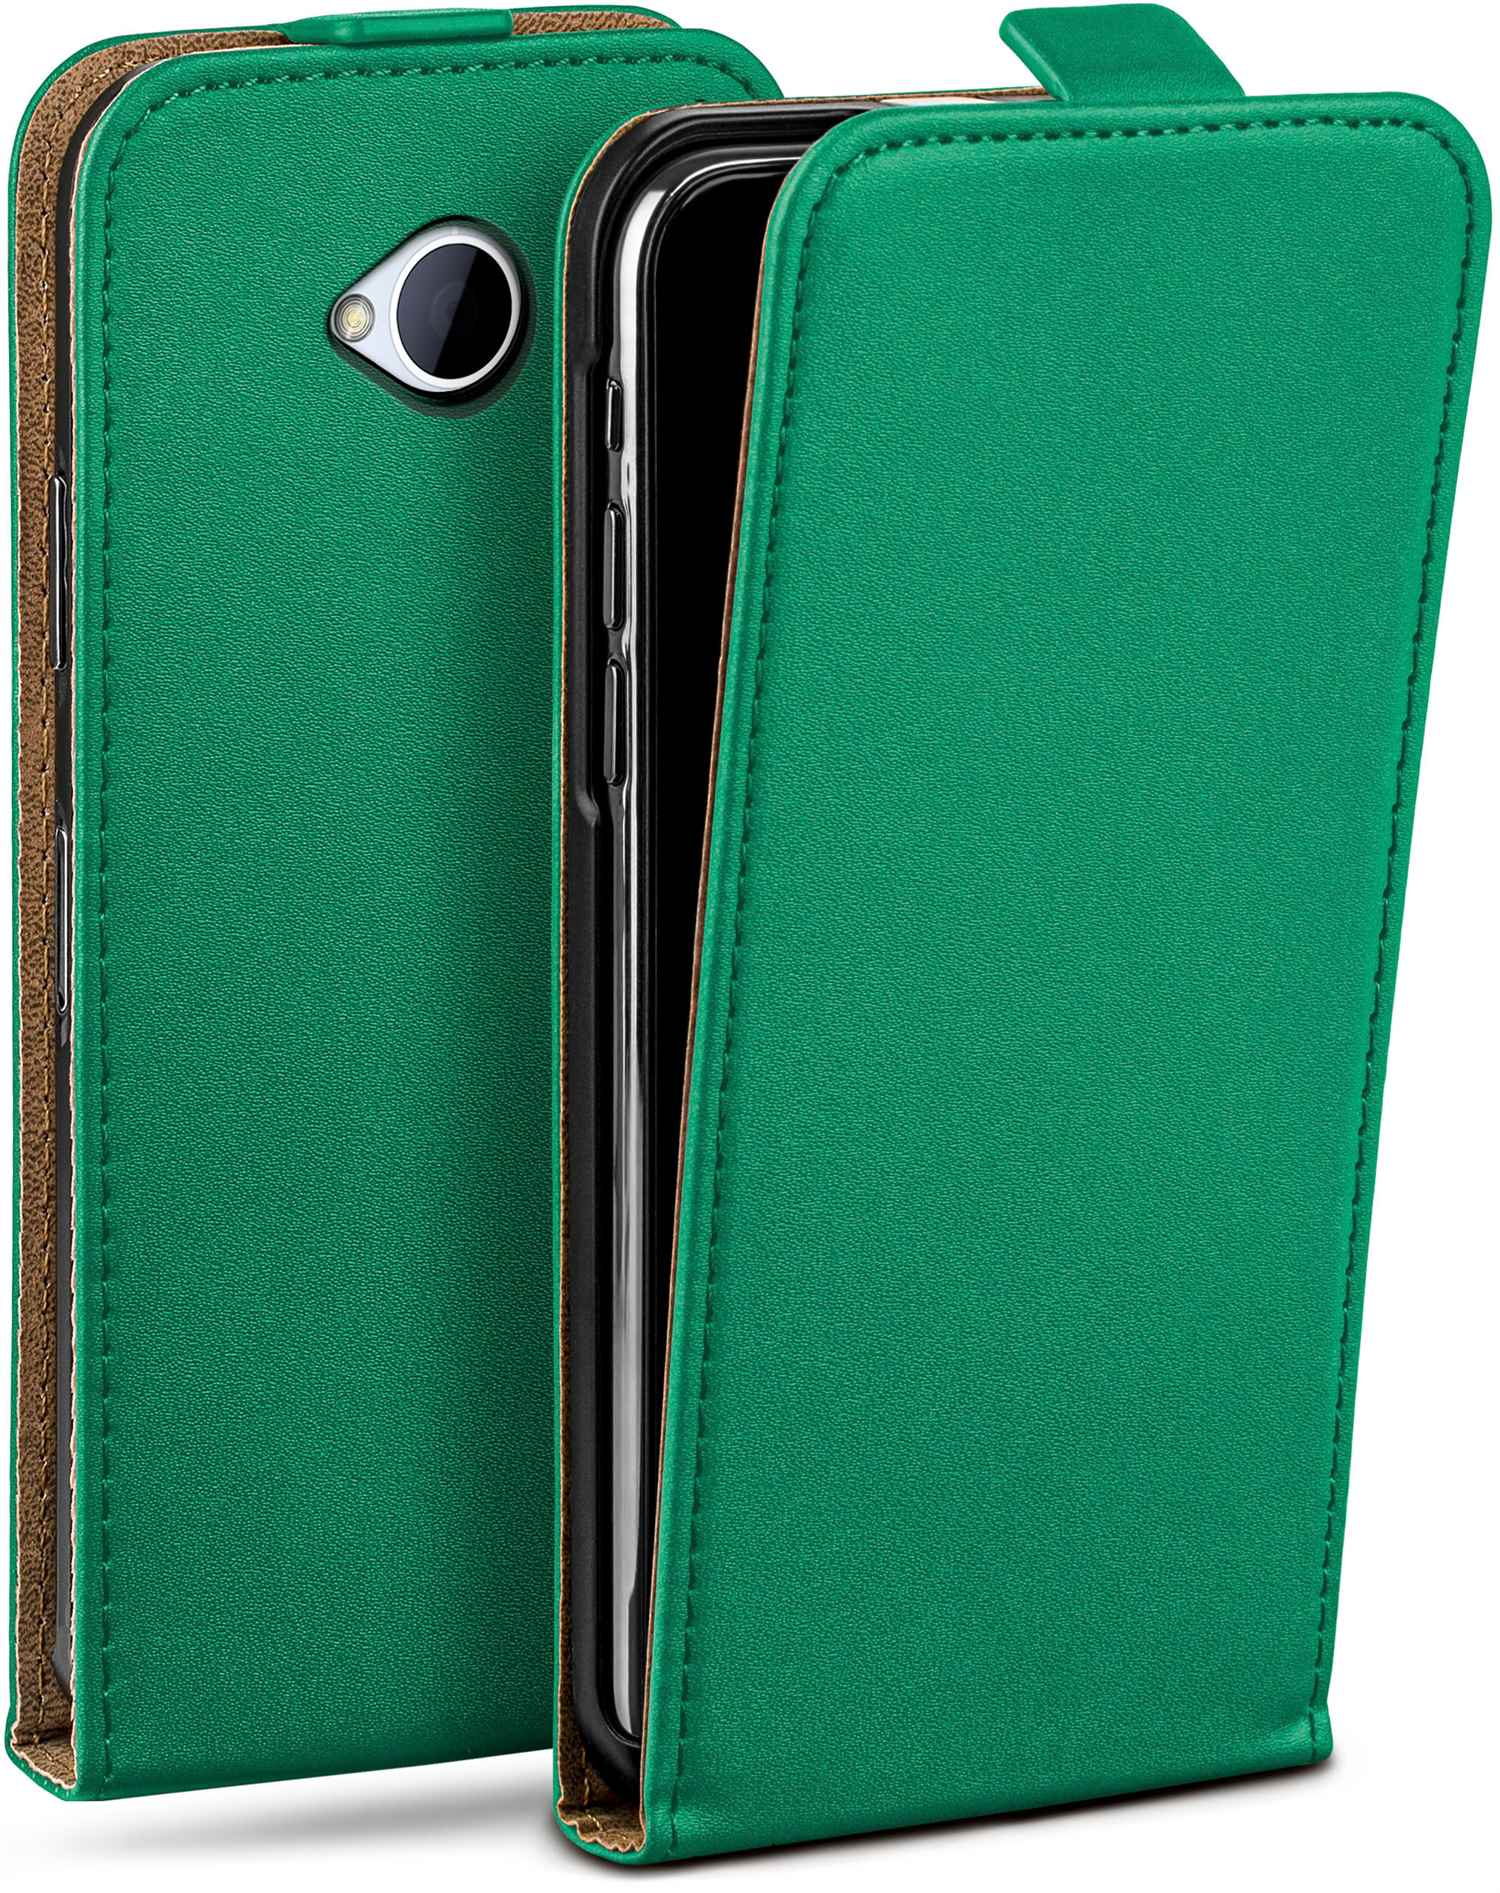 Cover, MOEX Case, HTC, Emerald-Green M7, Flip One Flip